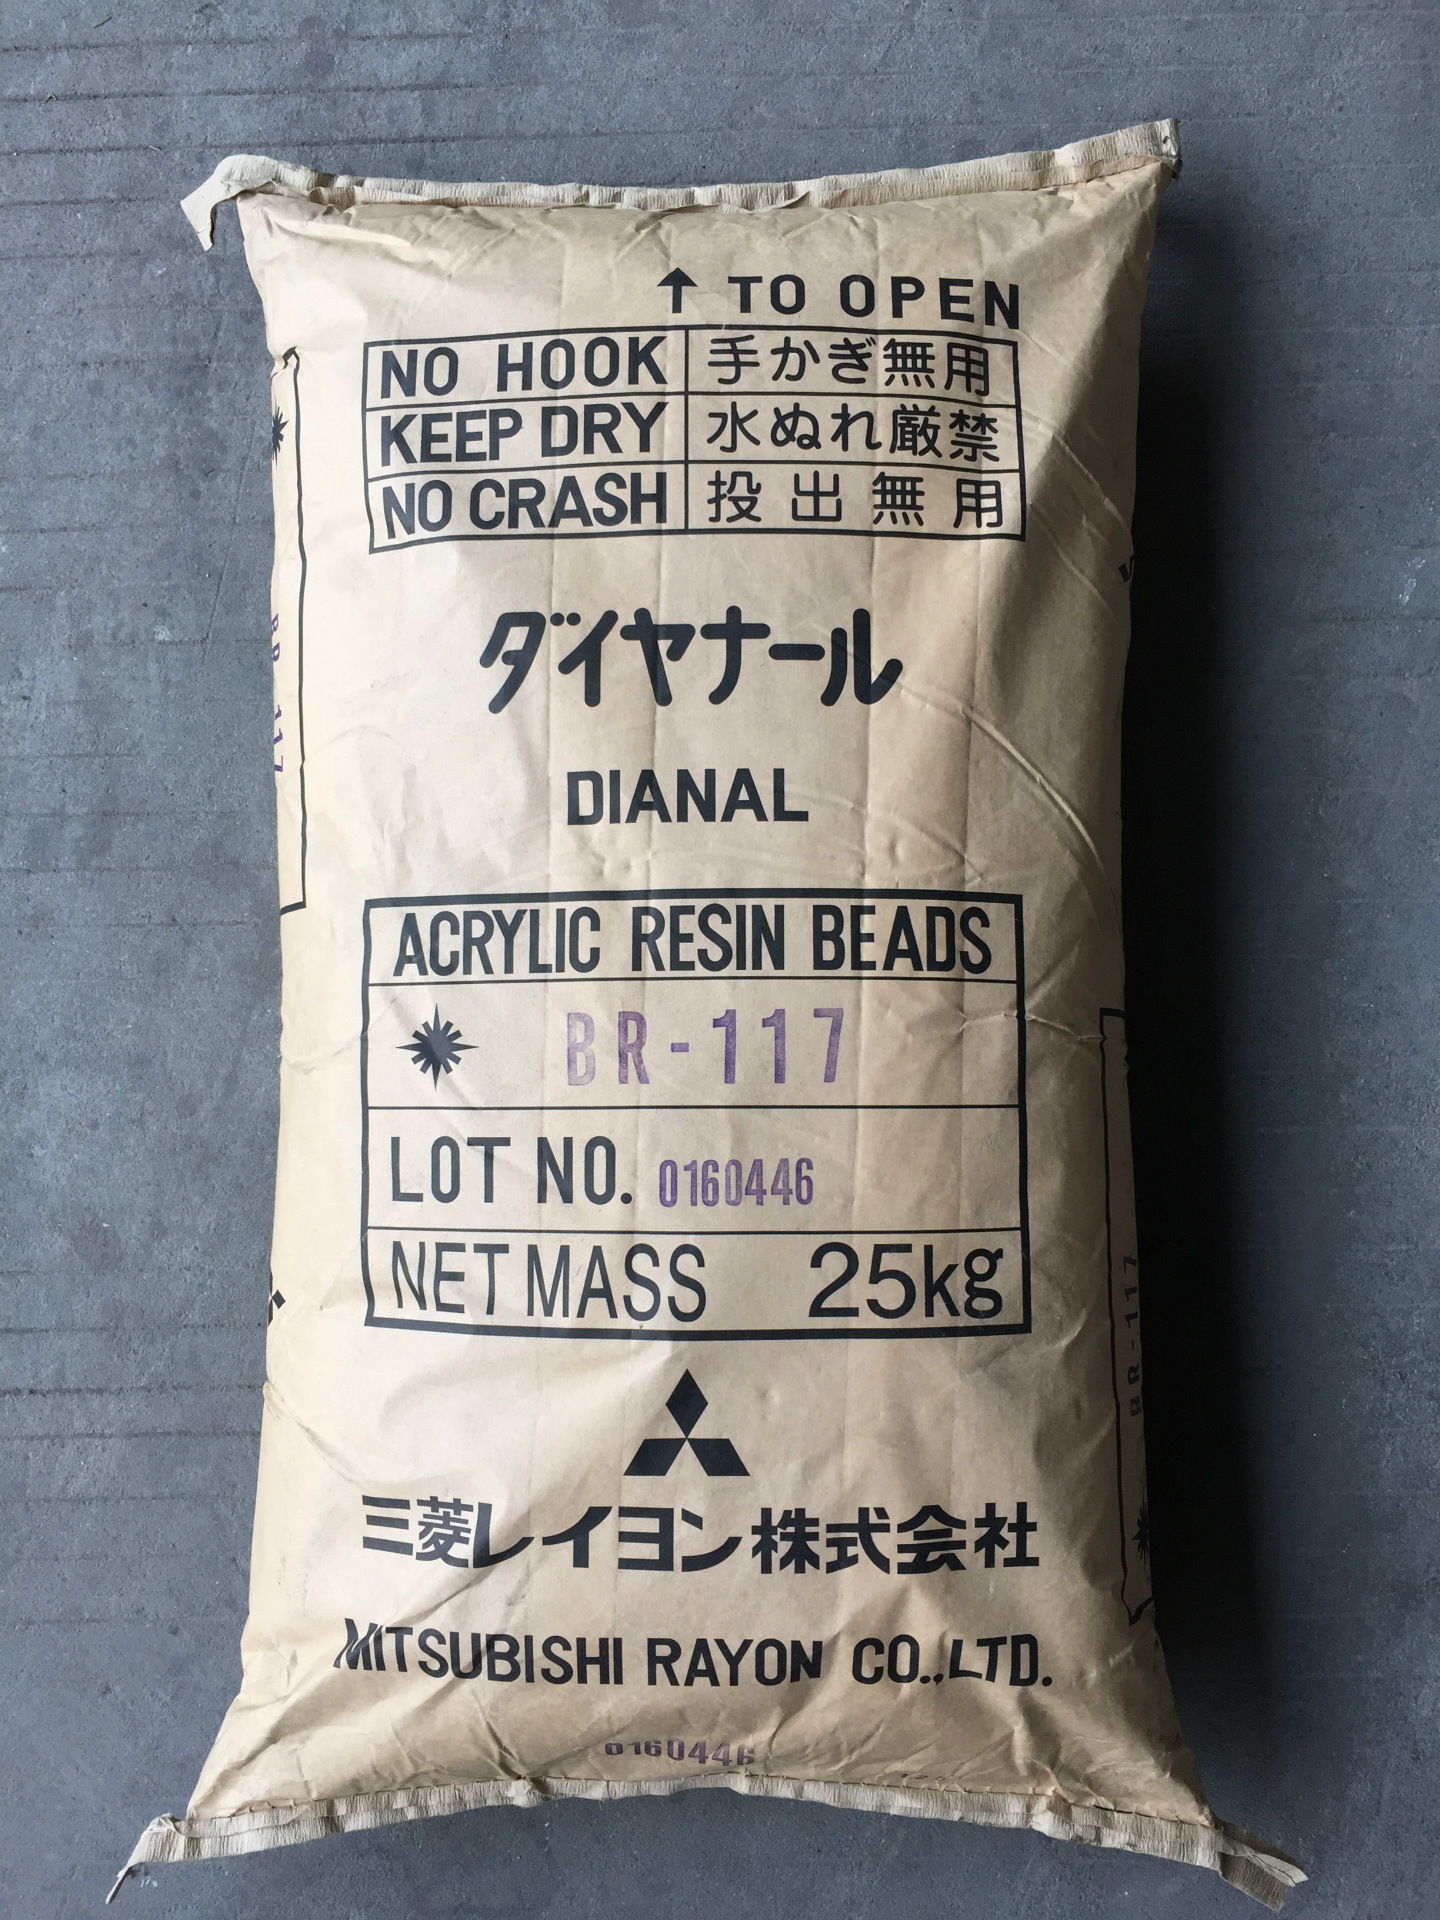 黛安娜BR-117 日本进口三菱丙烯酸树脂 DIANAL 固态热塑性树脂